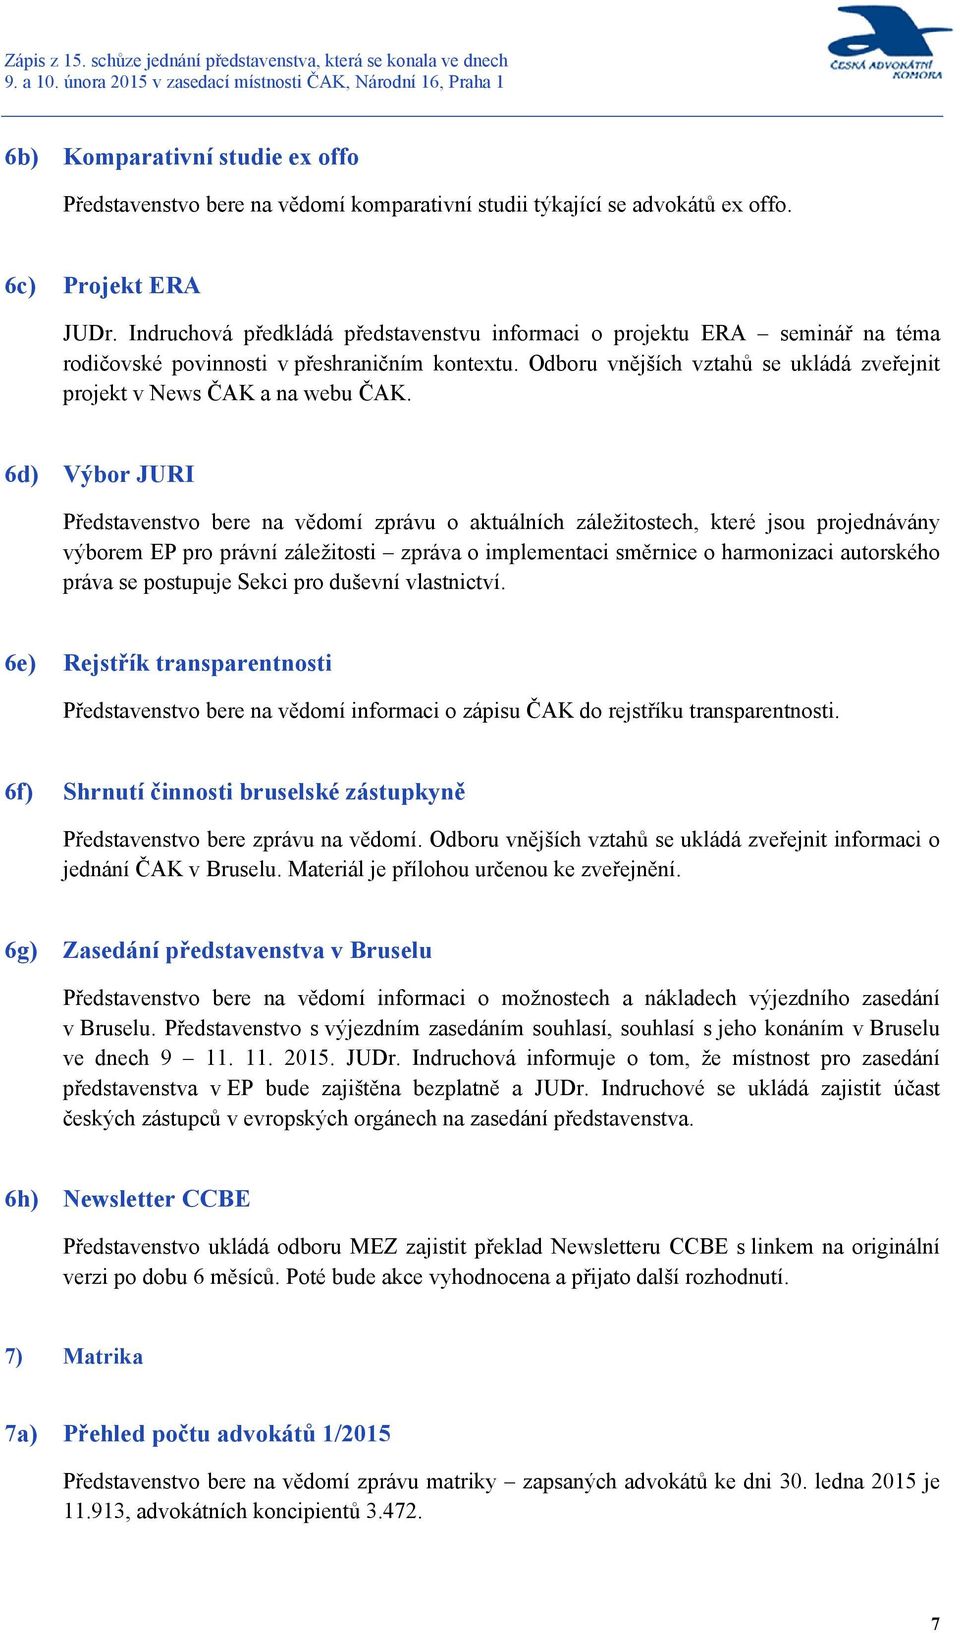 Odboru vnějších vztahů se ukládá zveřejnit projekt v News ČAK a na webu ČAK.